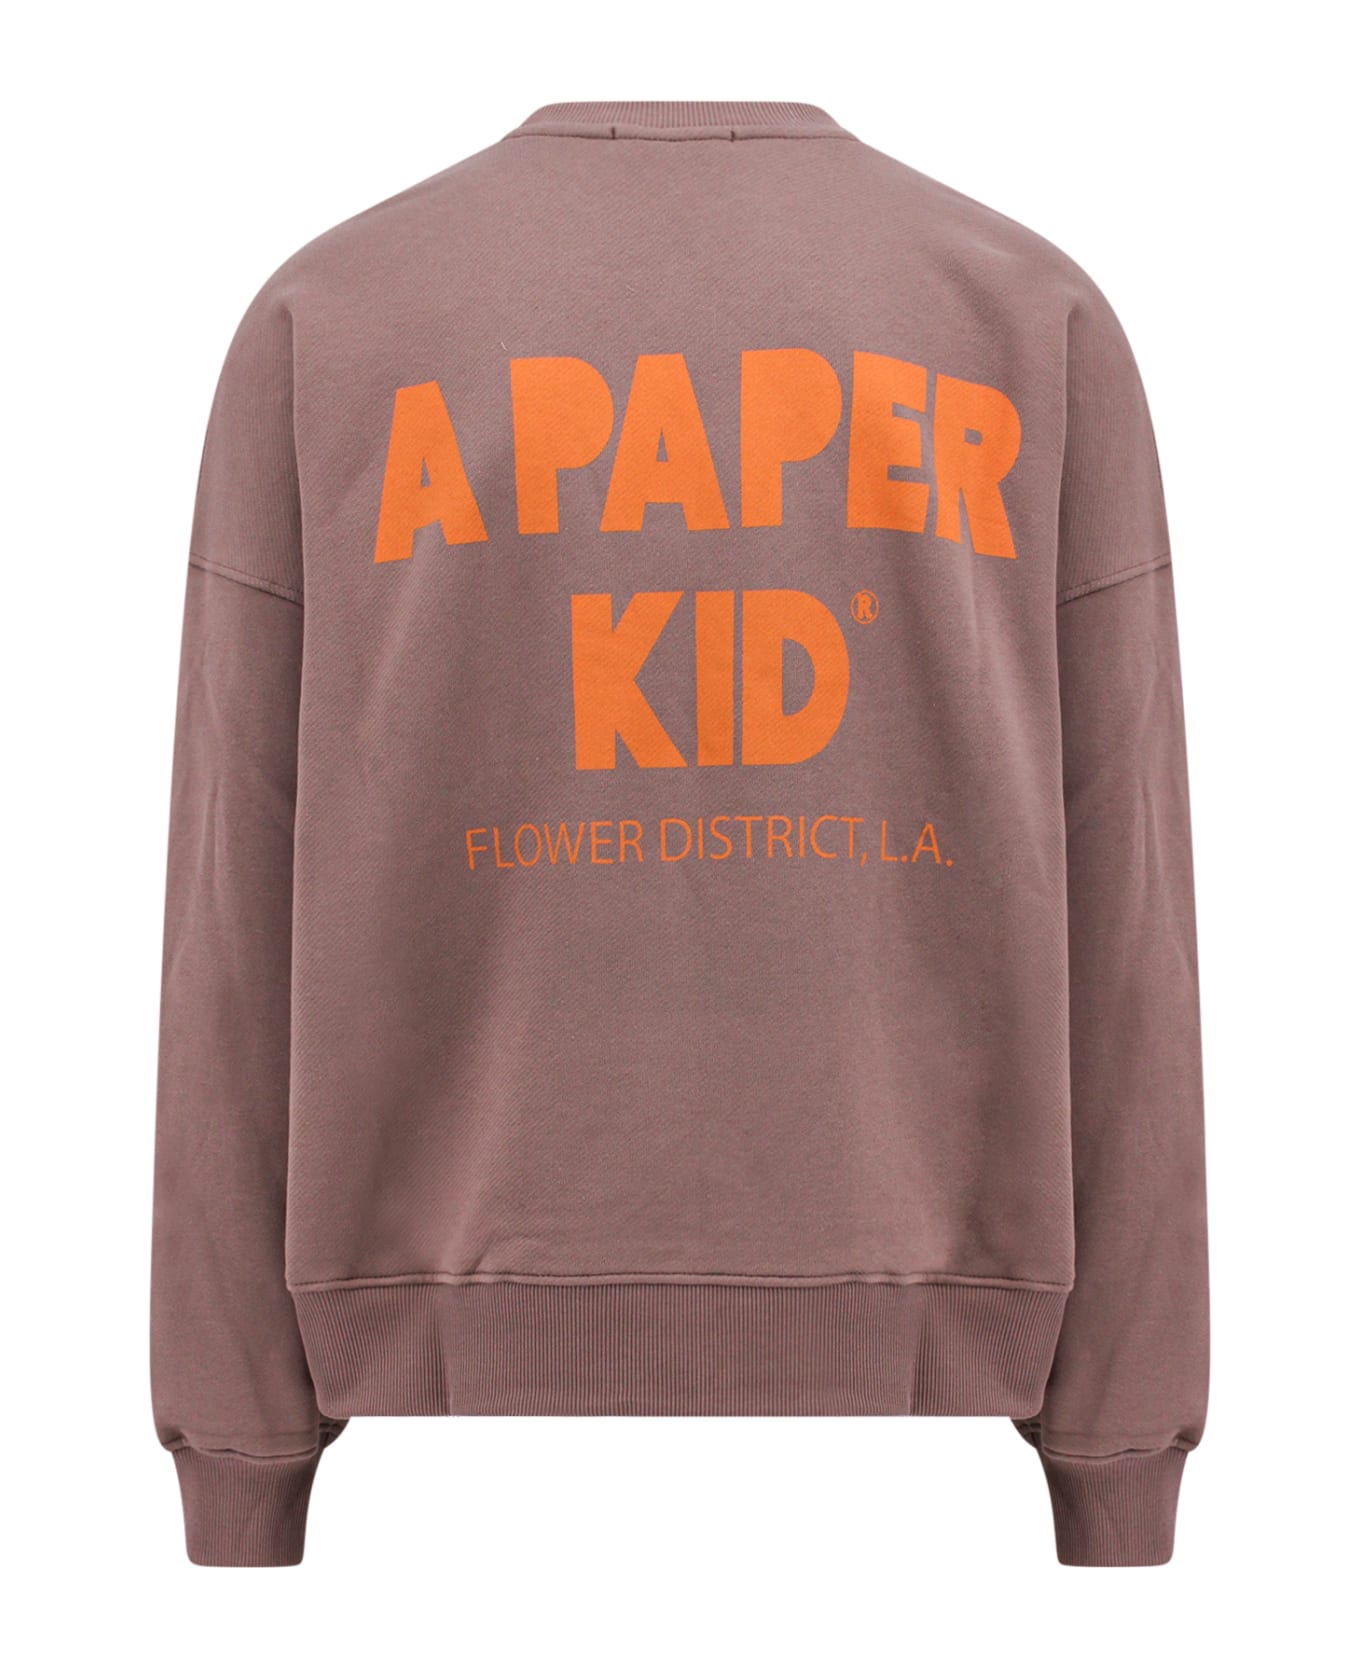 A Paper Kid Sweatshirt - Brown